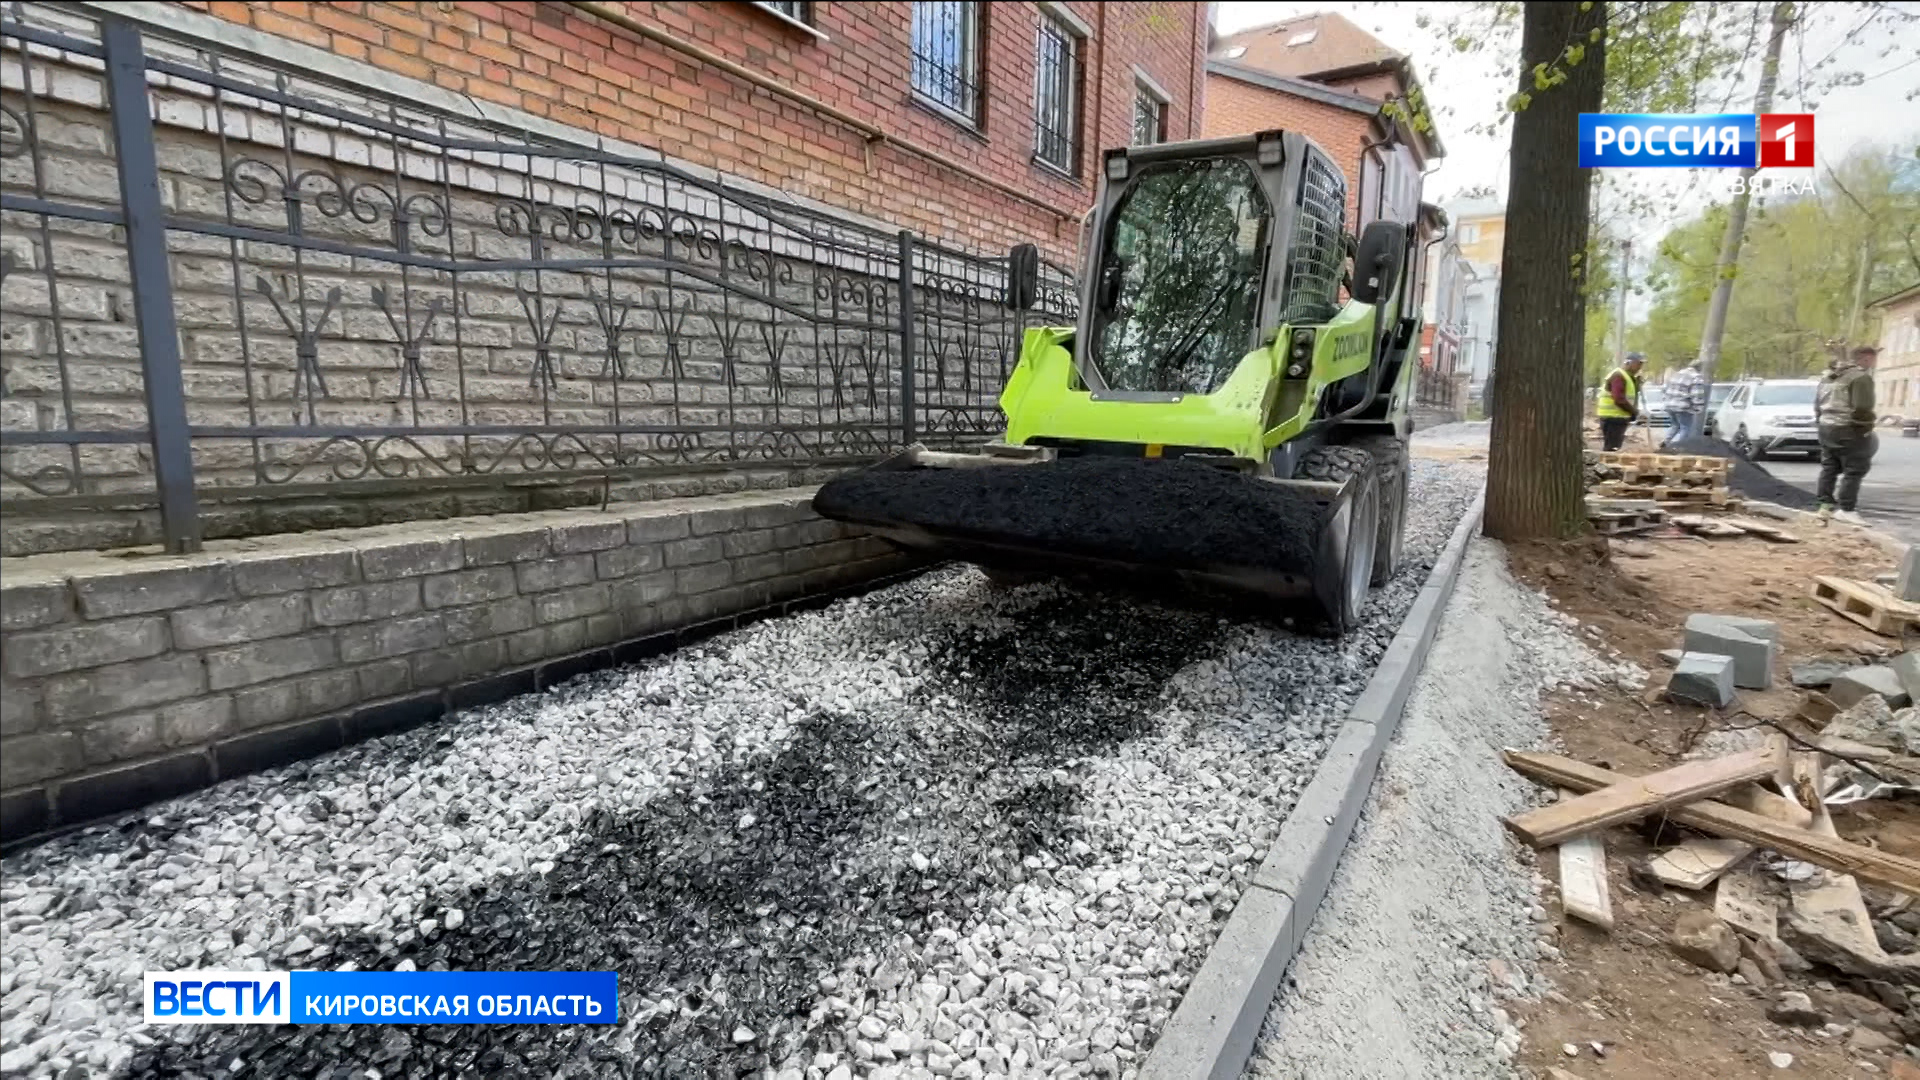 Для ремонта тротуаров в Кирове подрядчик привлекает дополнительные ресурсы